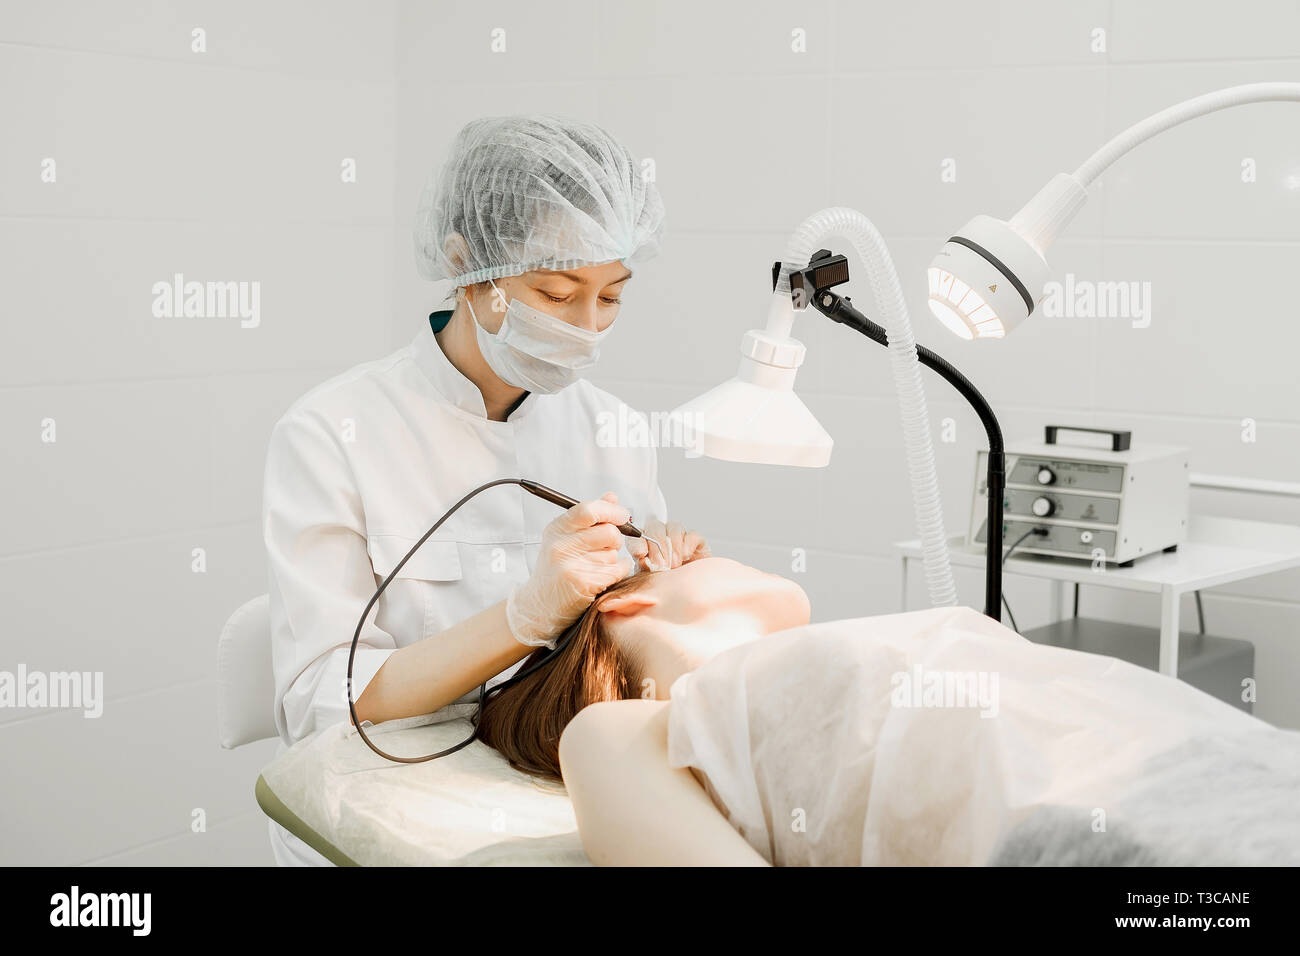 Medizinische Behandlung Entfernung von muttermal von Gesicht des weiblichen Patienten. Weibliche Dermatologe Chirurg mit einem professionellen Elektrokauter für das Entfernen der Maulwurf. Stockfoto